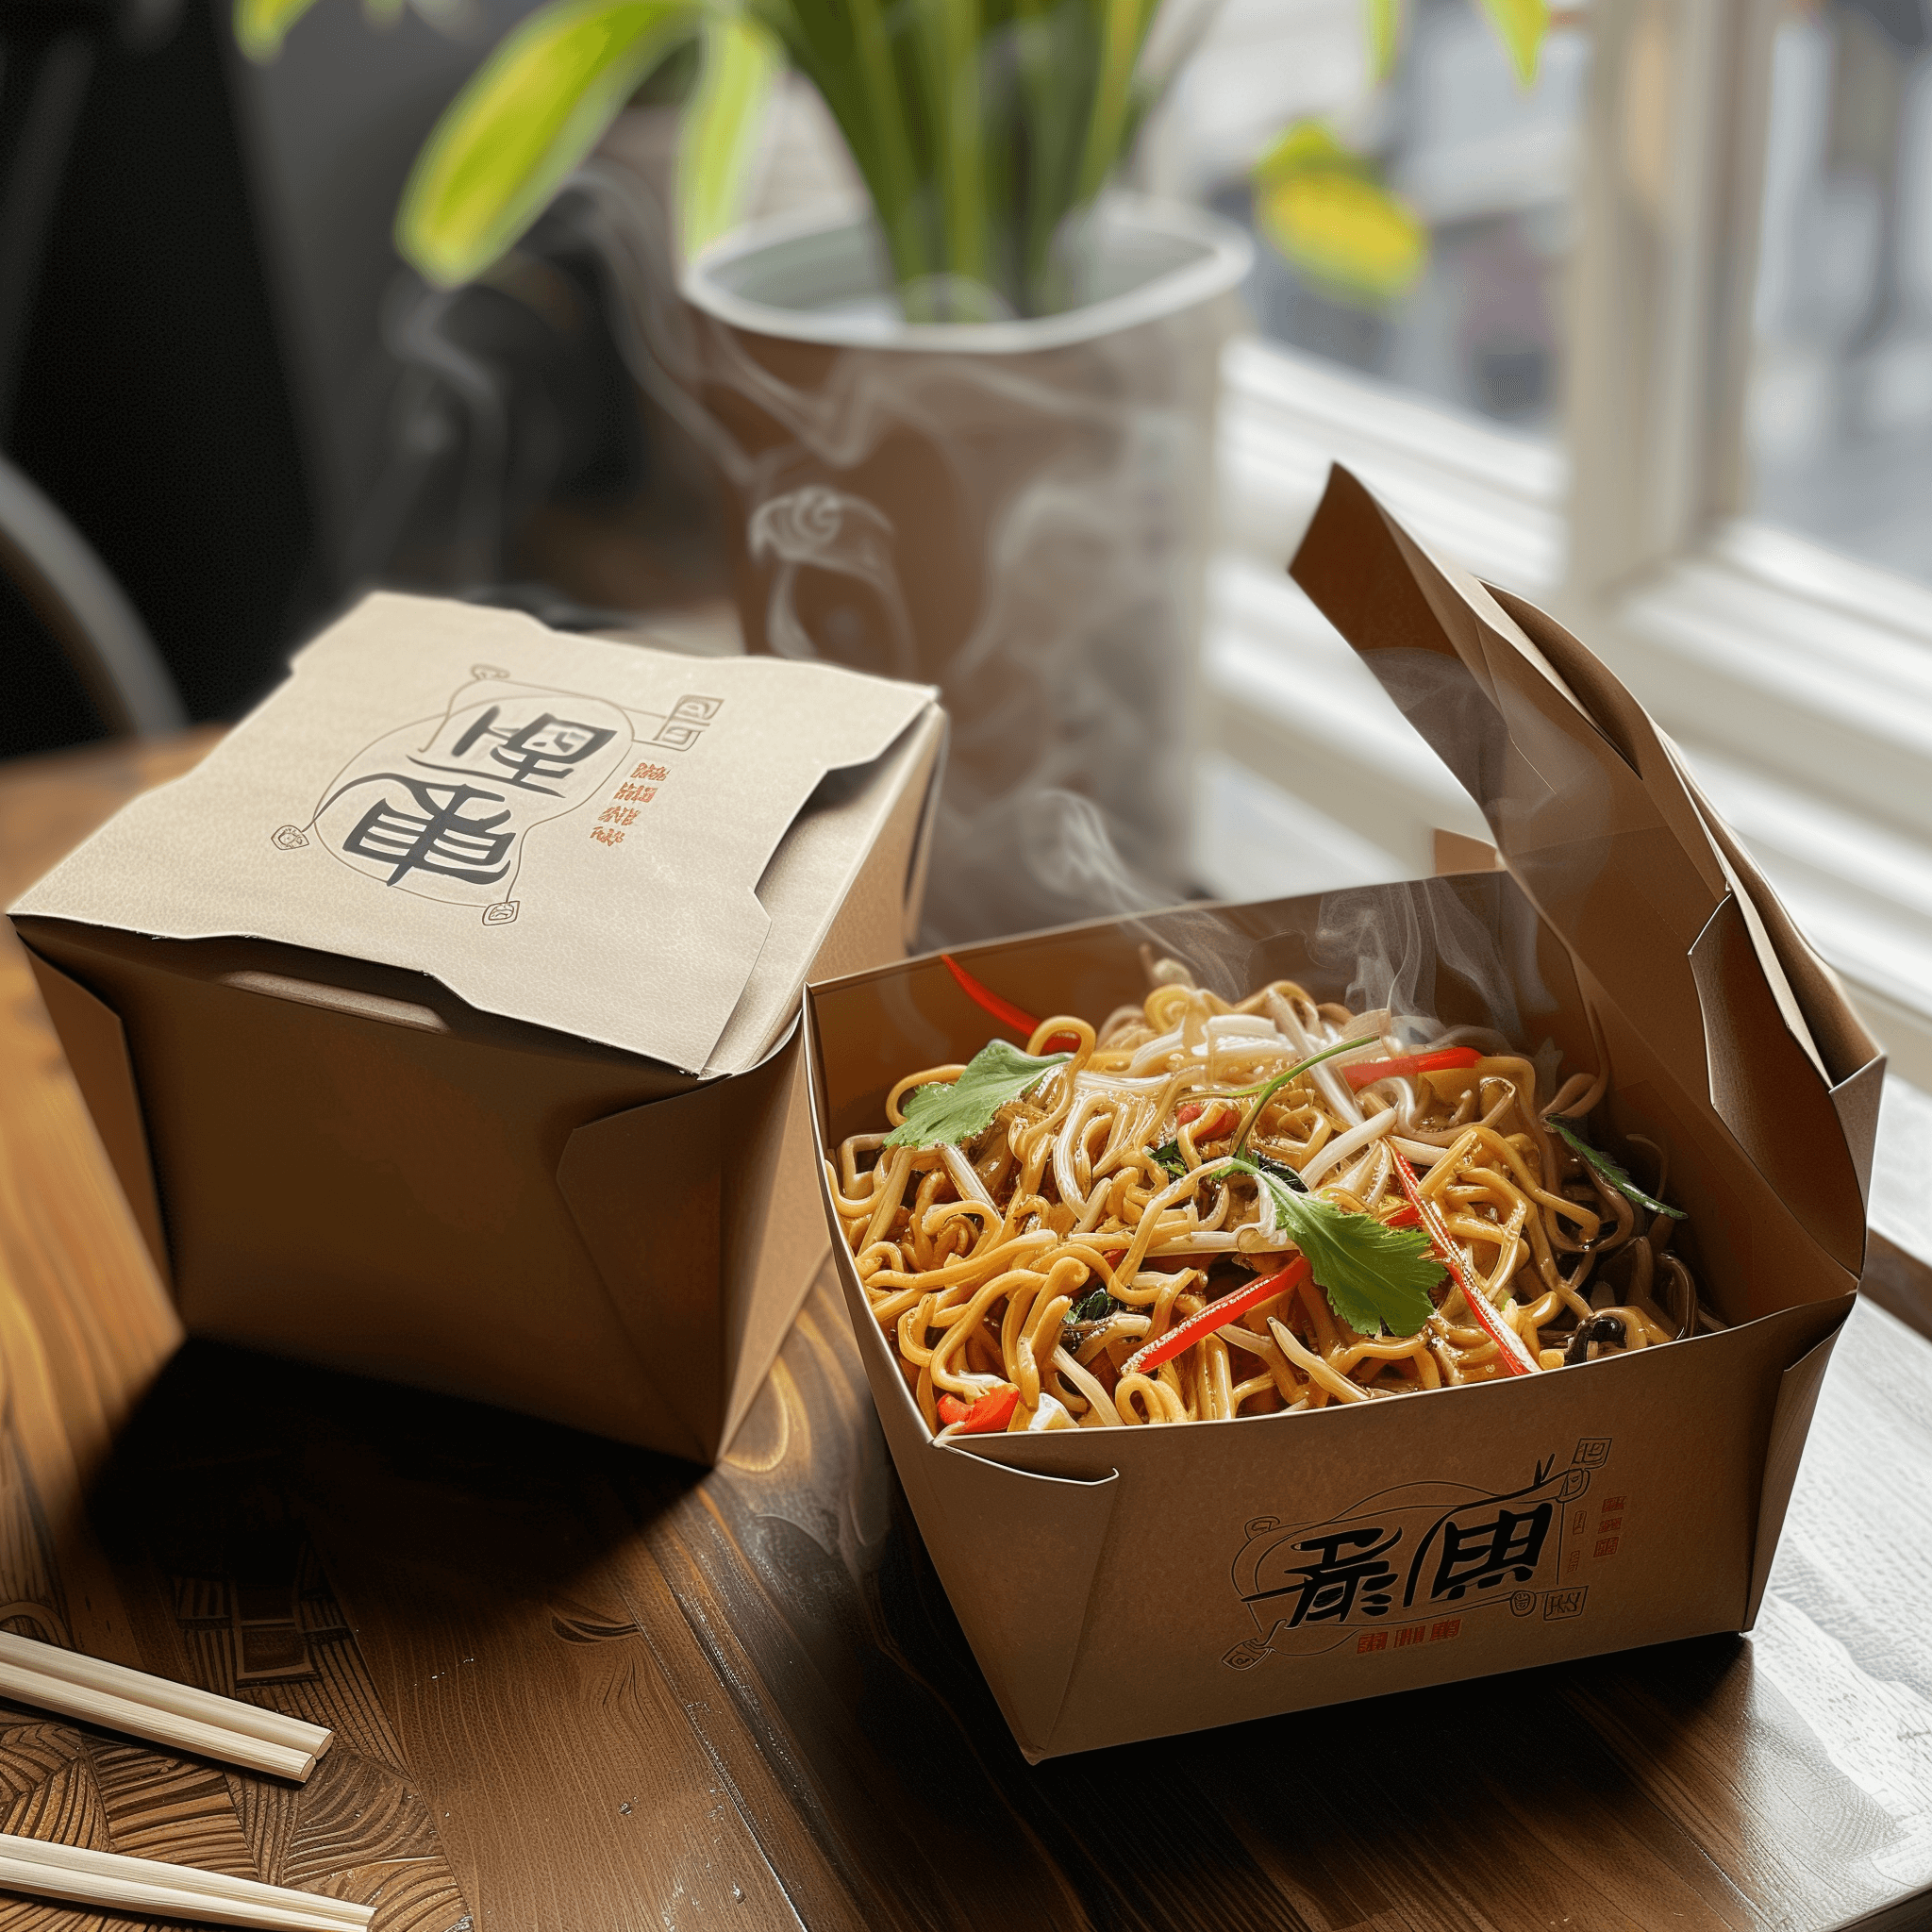 Eine mit dampfenden Nudeln gefüllte, mit Gemüse und Koriander garnierte Take-away-Box steht teilweise geöffnet auf einem Holztisch neben einer geschlossenen Take-away-Box mit chinesischen Schriftzeichen. Essstäbchen liegen in der Nähe.